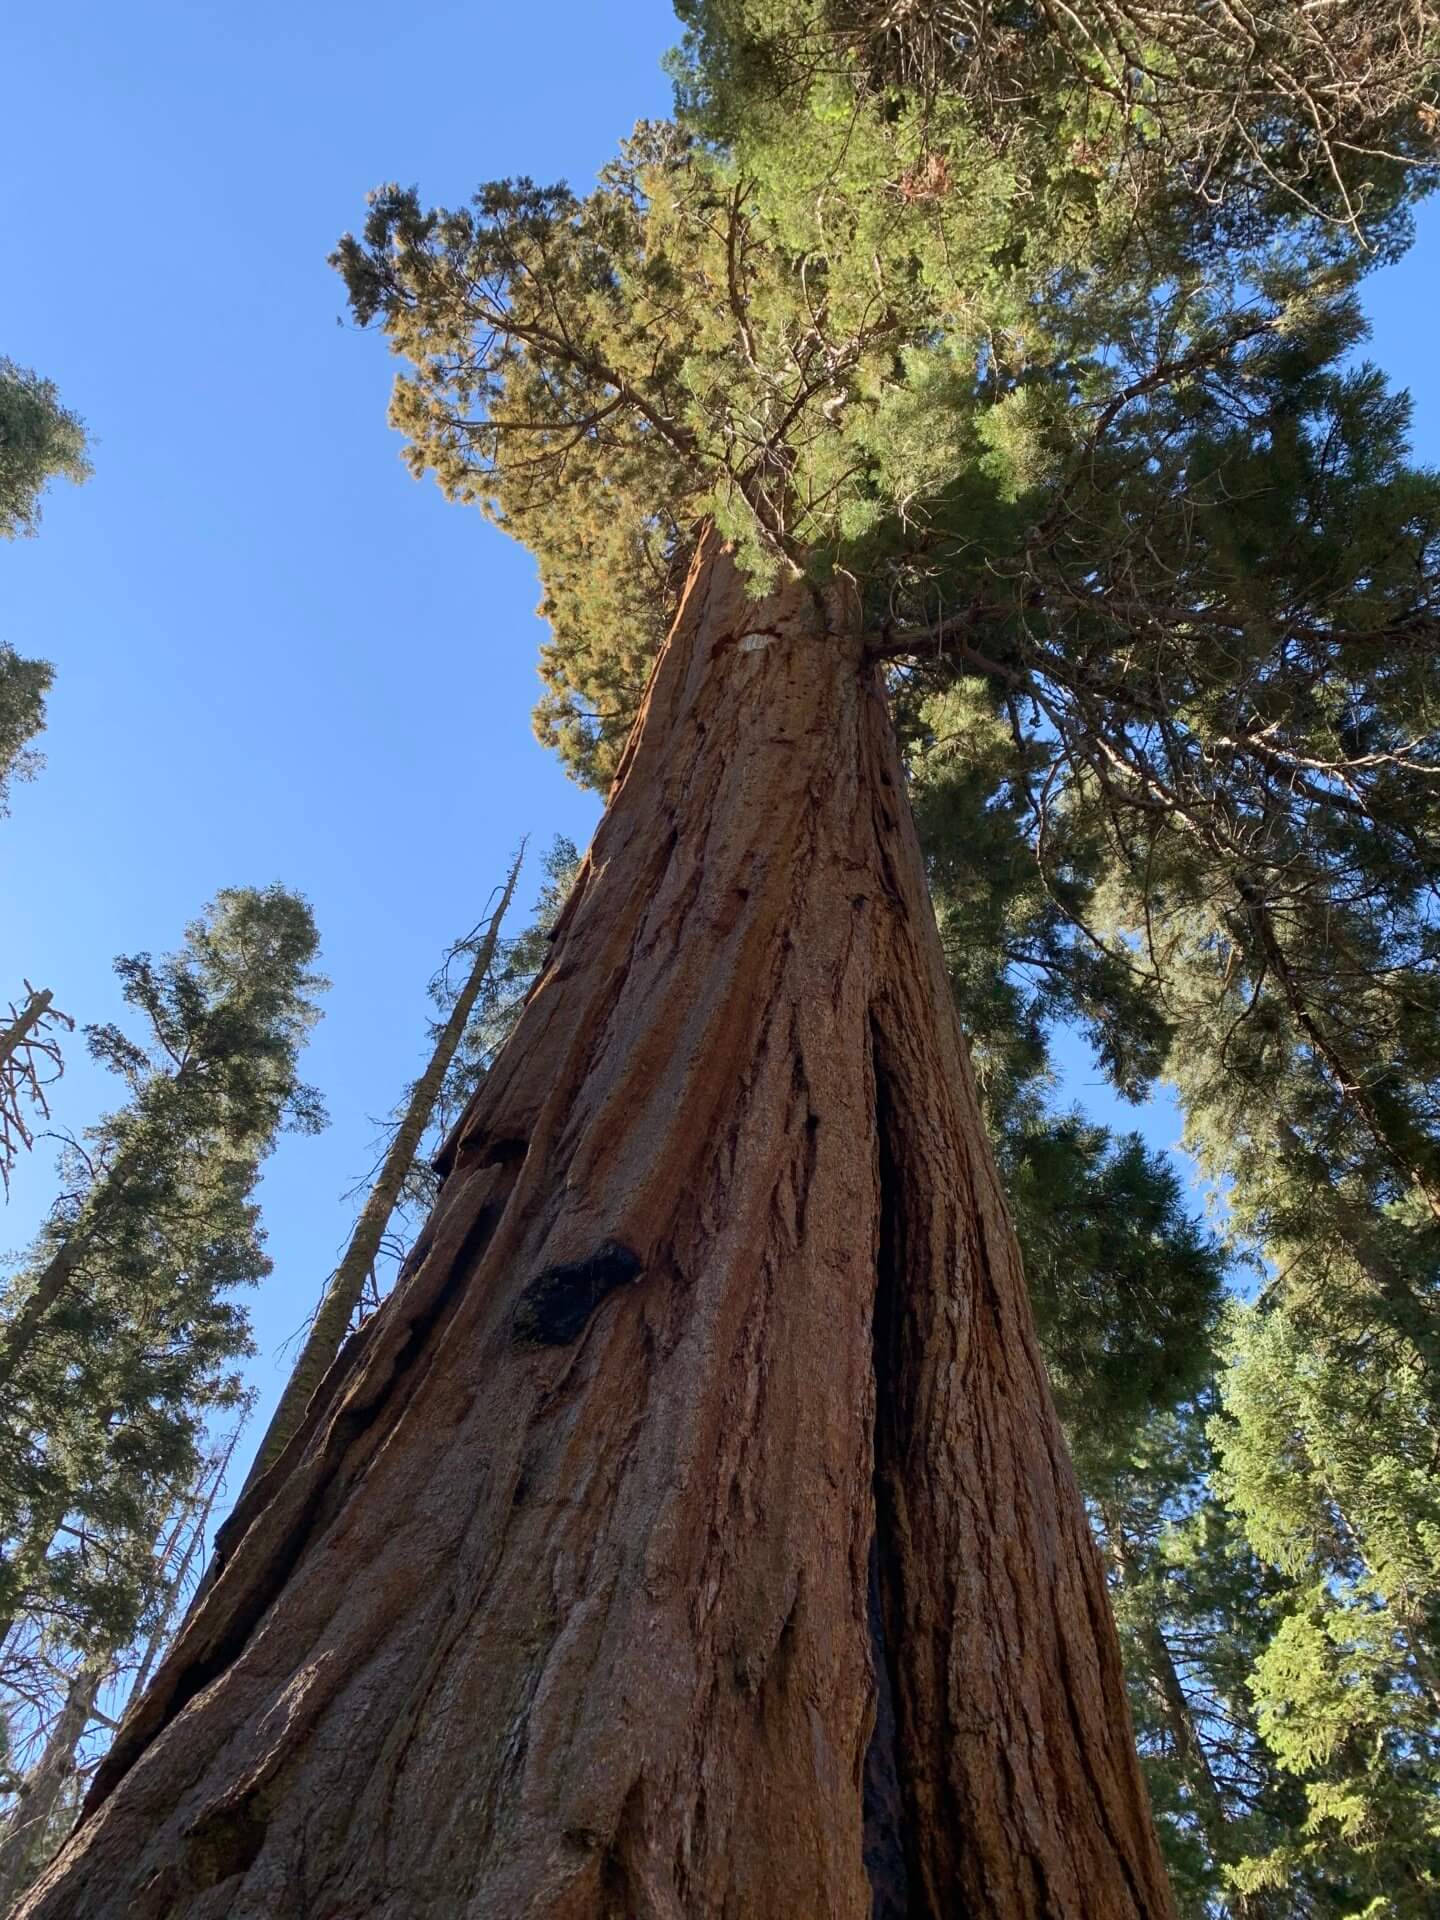 A Spontaneous Trip to Sequoia